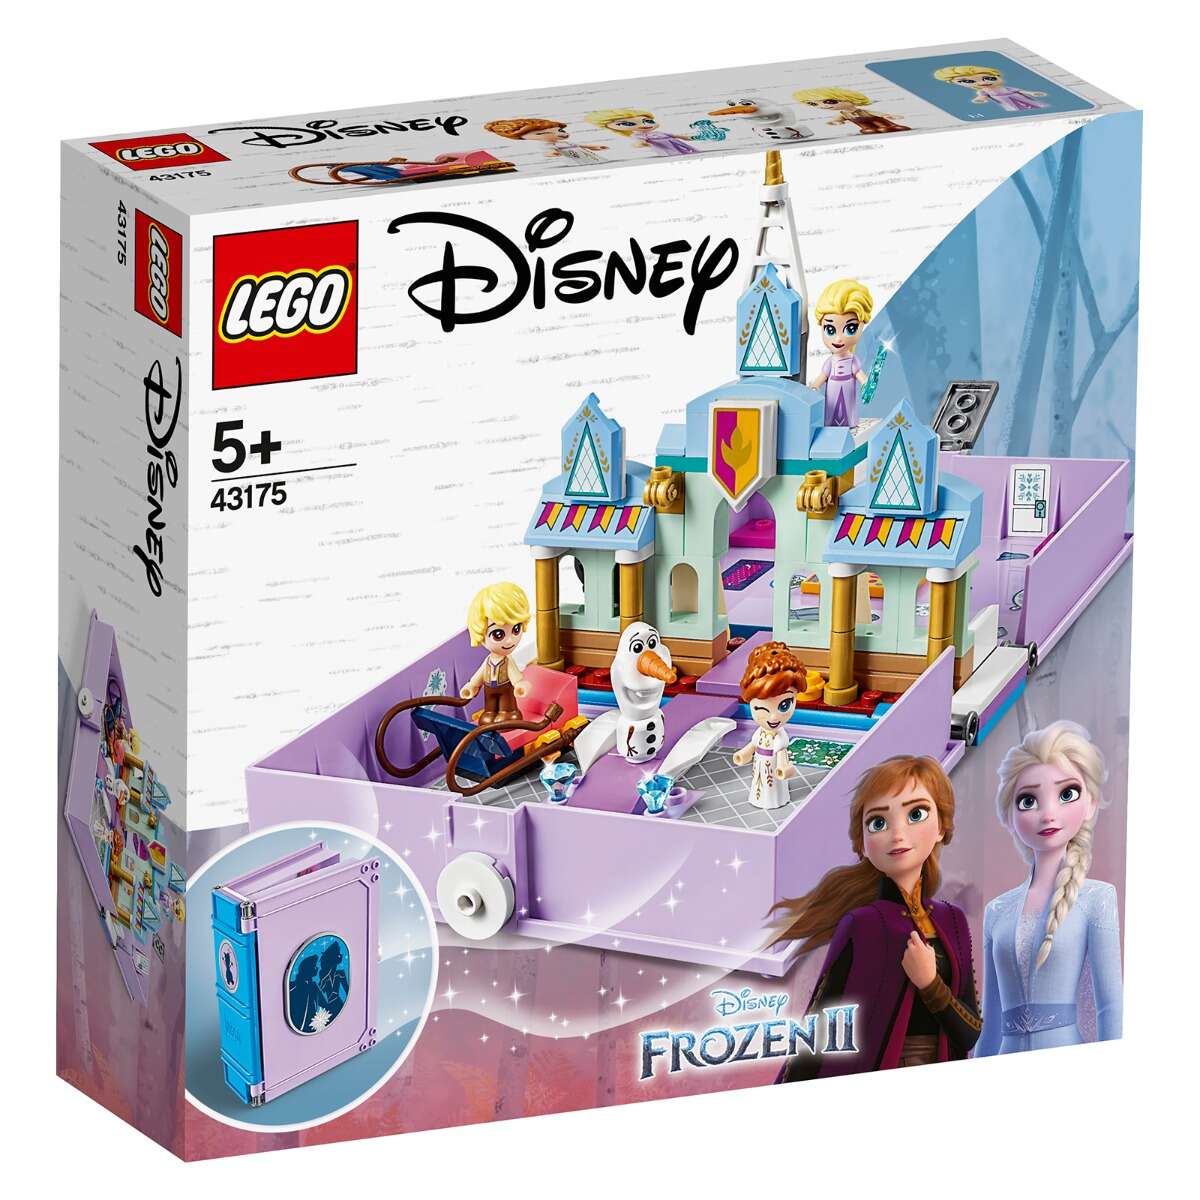 LEGO® Disney Frozen - Aventuri din cartea de povesti cu Anna si Elsa (3175)